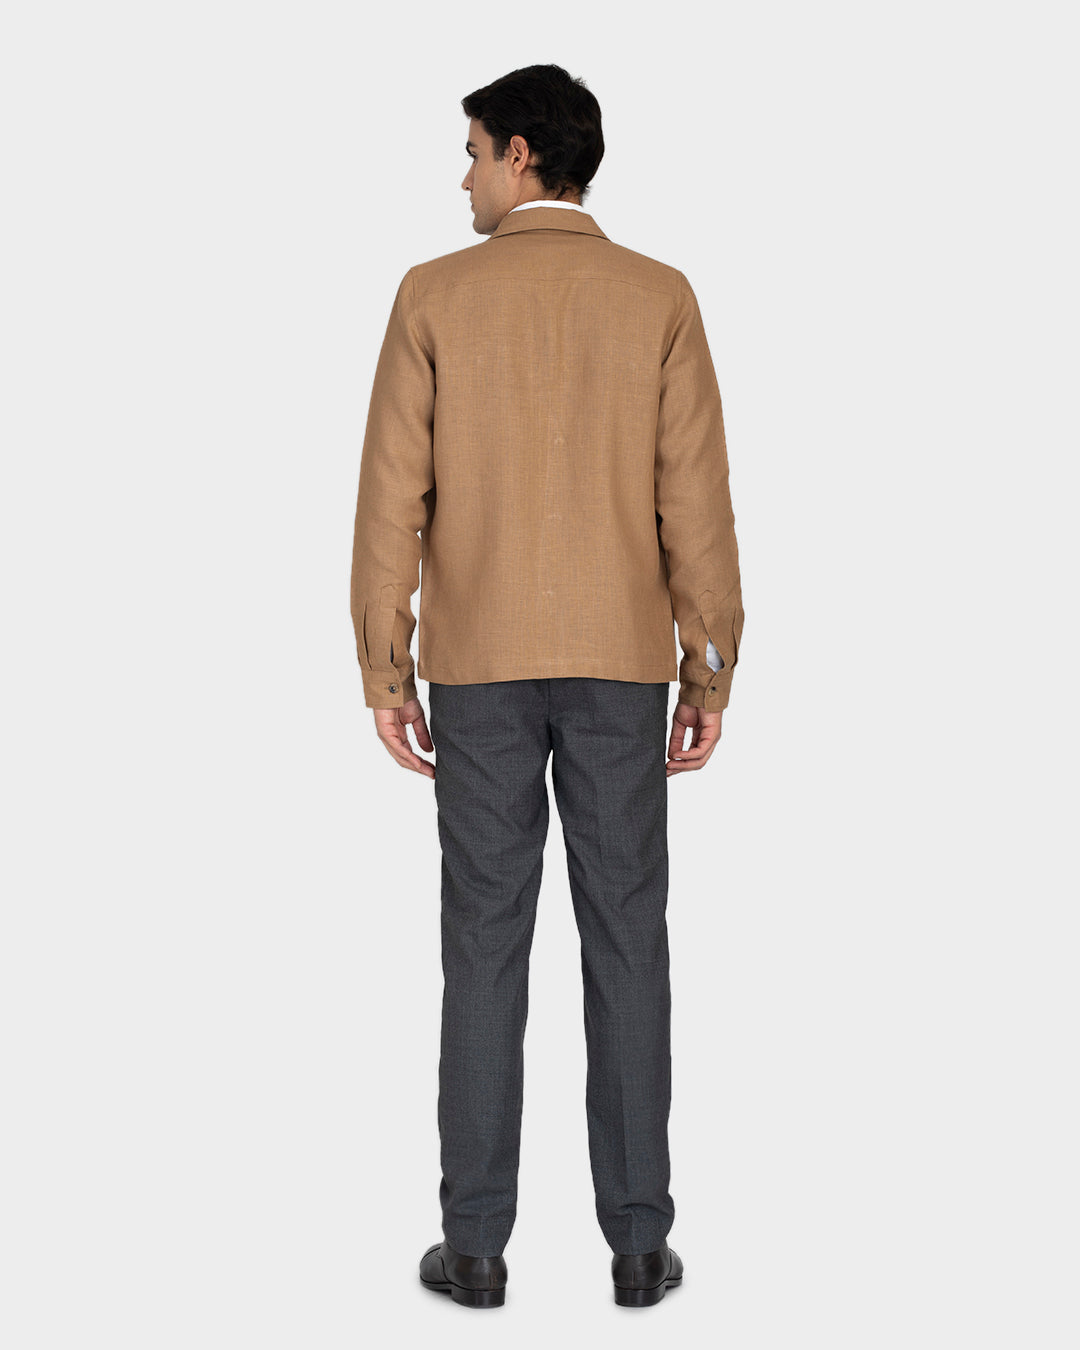 Golden Brown Linen Shirt Jacket